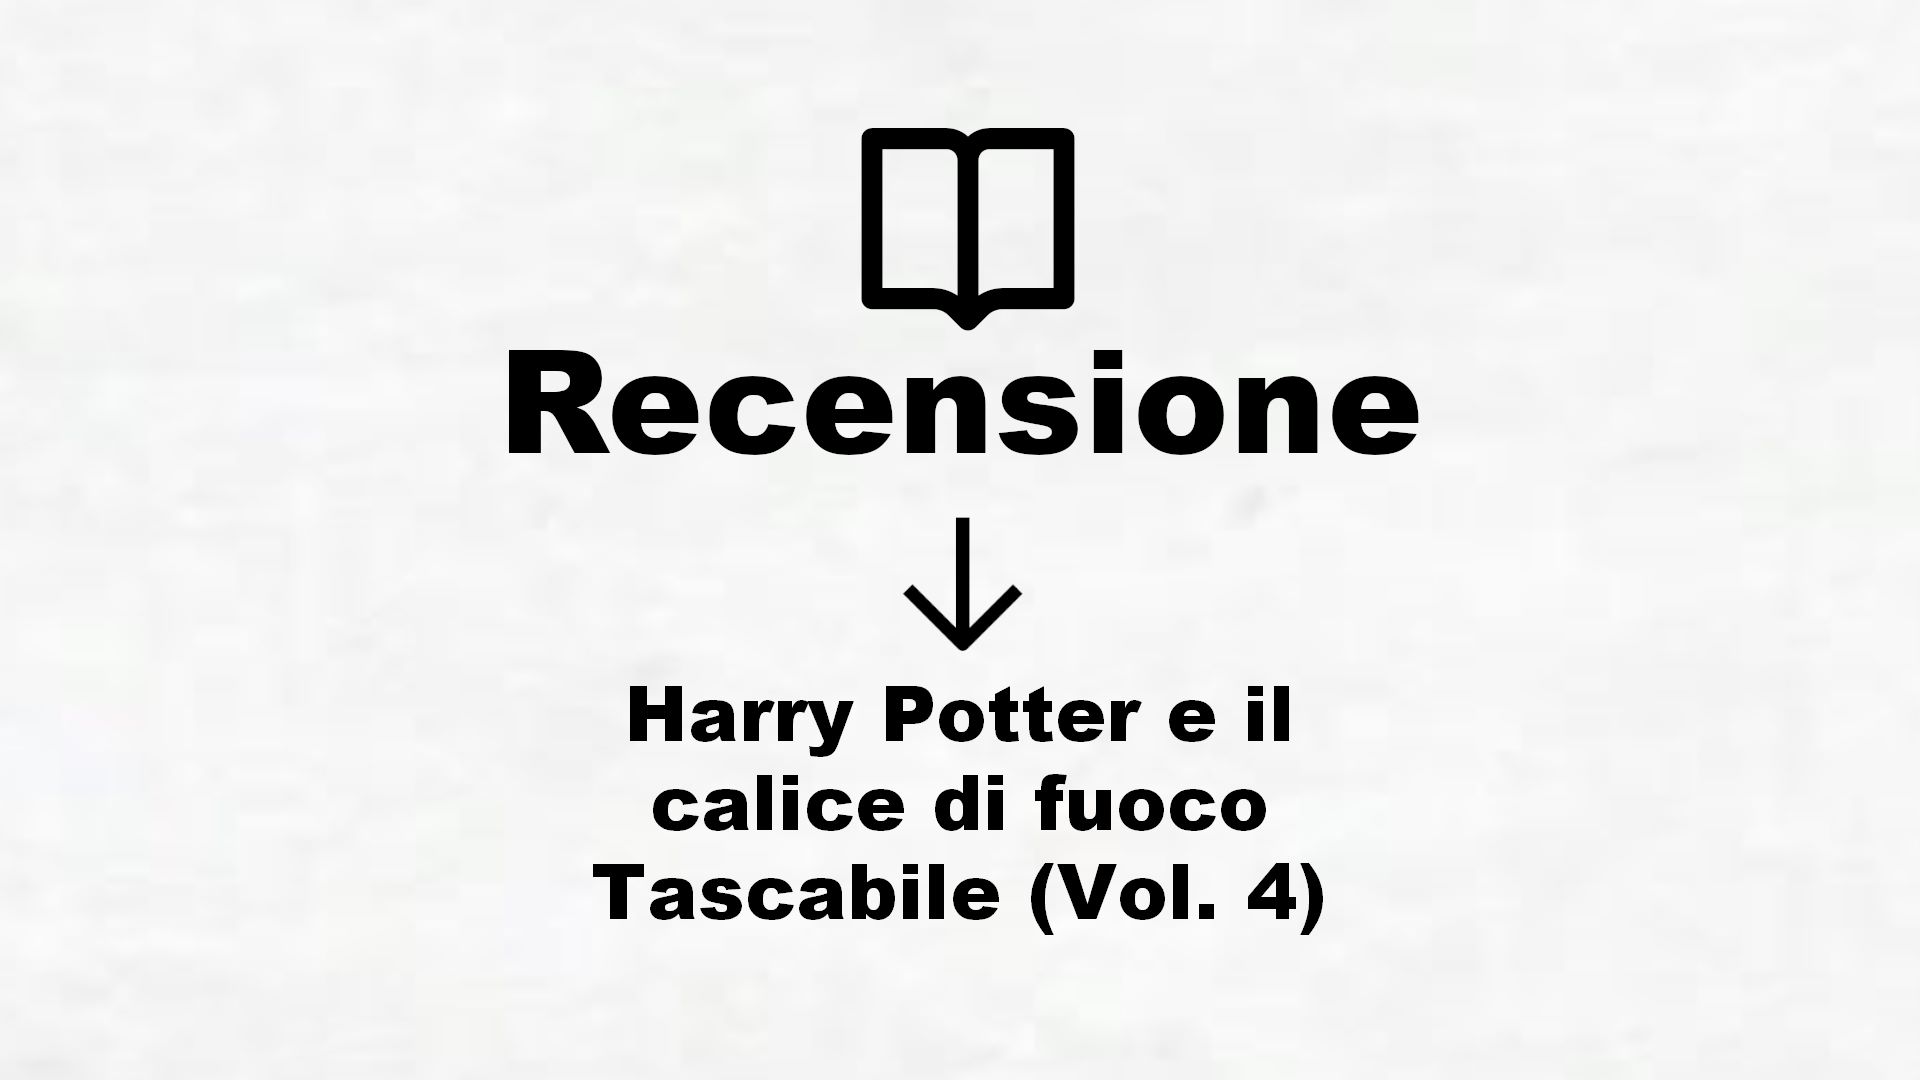 Harry Potter e il calice di fuoco Tascabile (Vol. 4) – Recensione Libro